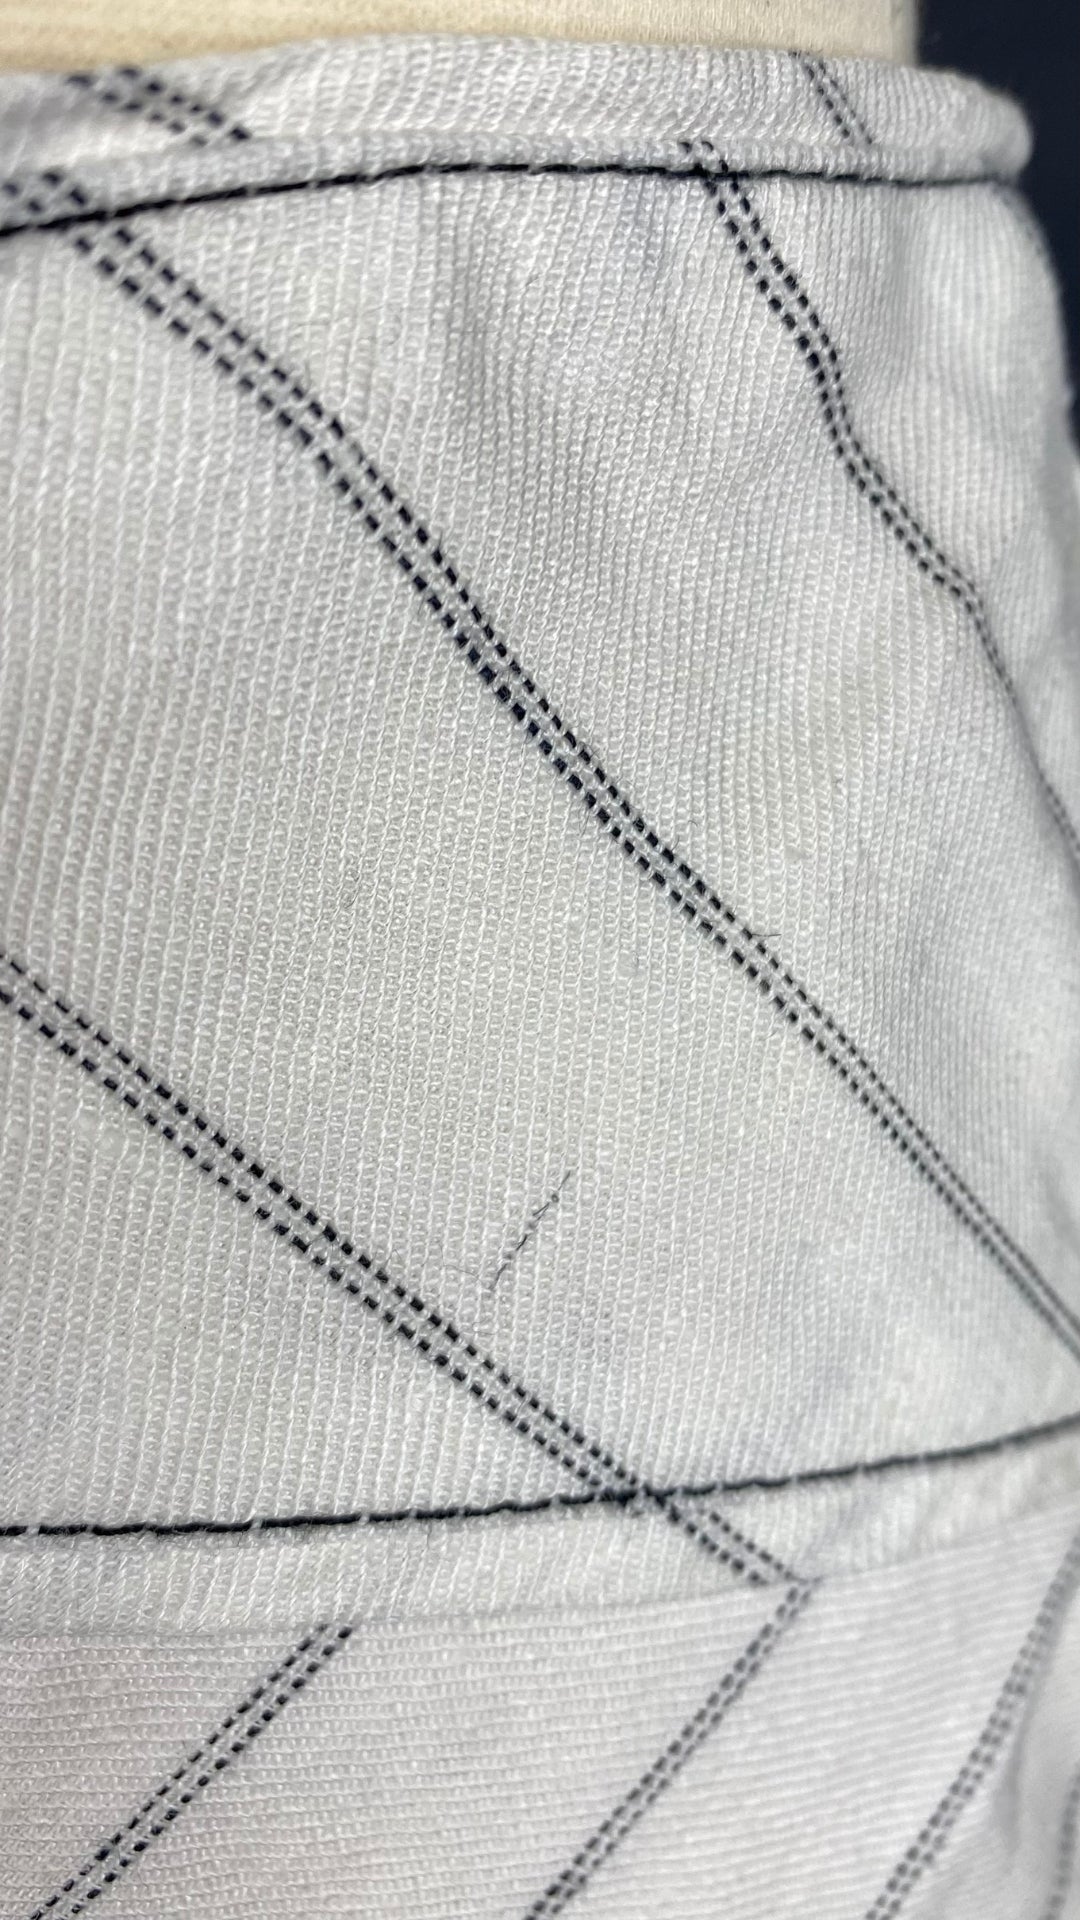 Jupe circulaire à rayures en lin Sandra Angelozzi, taille estimée à large. Vue de la mini imperfection dans le tissu.